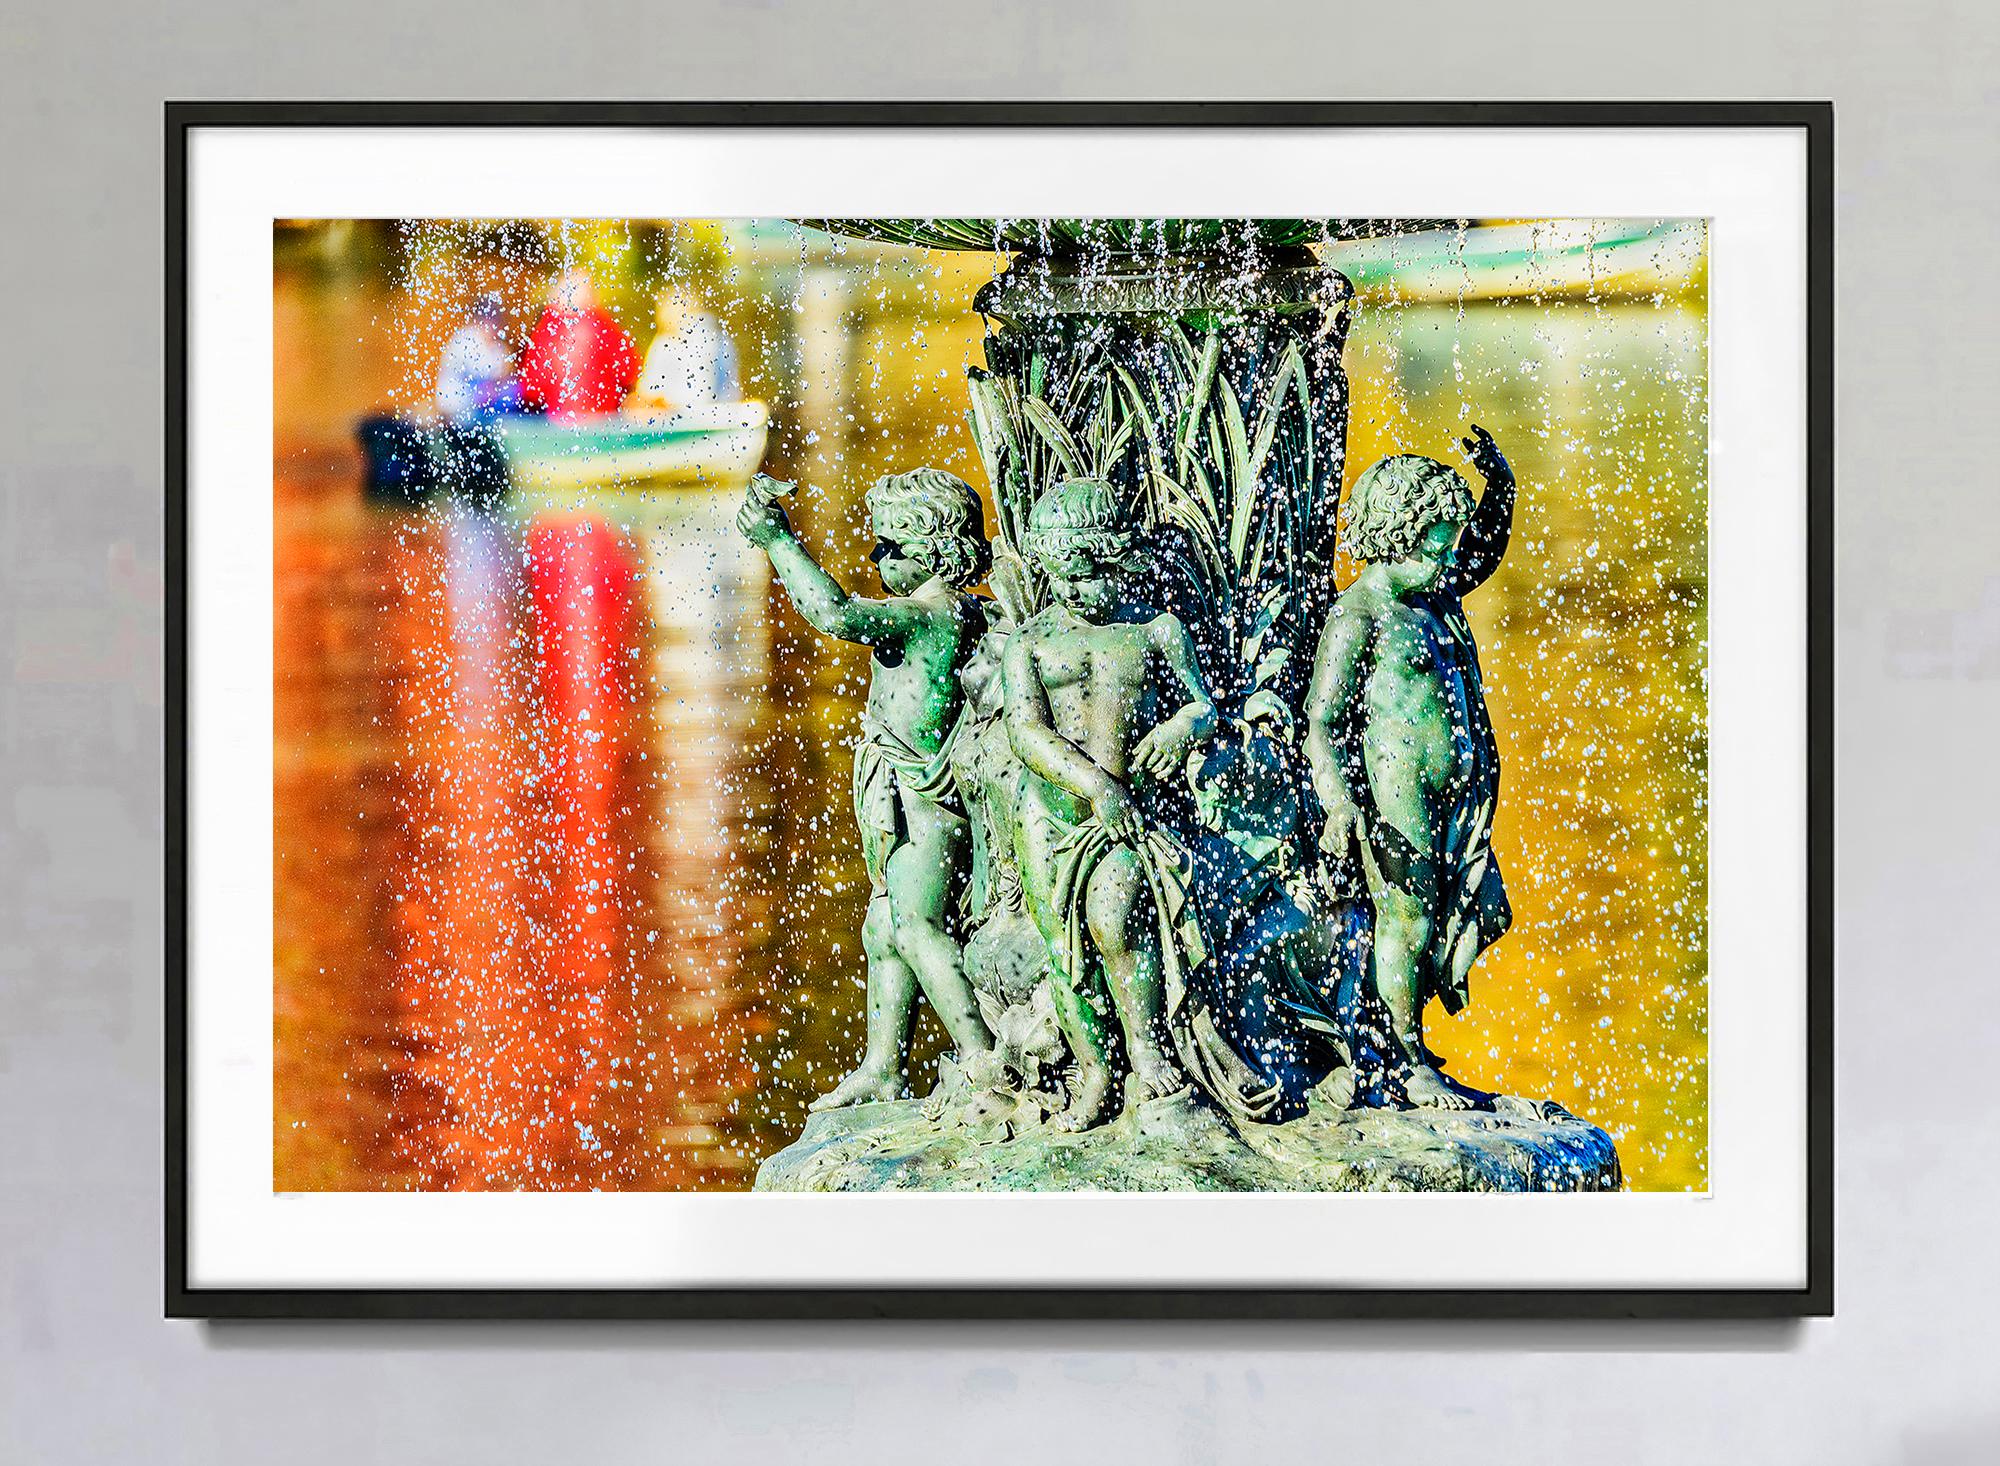 Romantischer Bethesda-Brunnen mit Angel of the Waters Bronzestatue Buntes Wasser – Photograph von Mitchell Funk